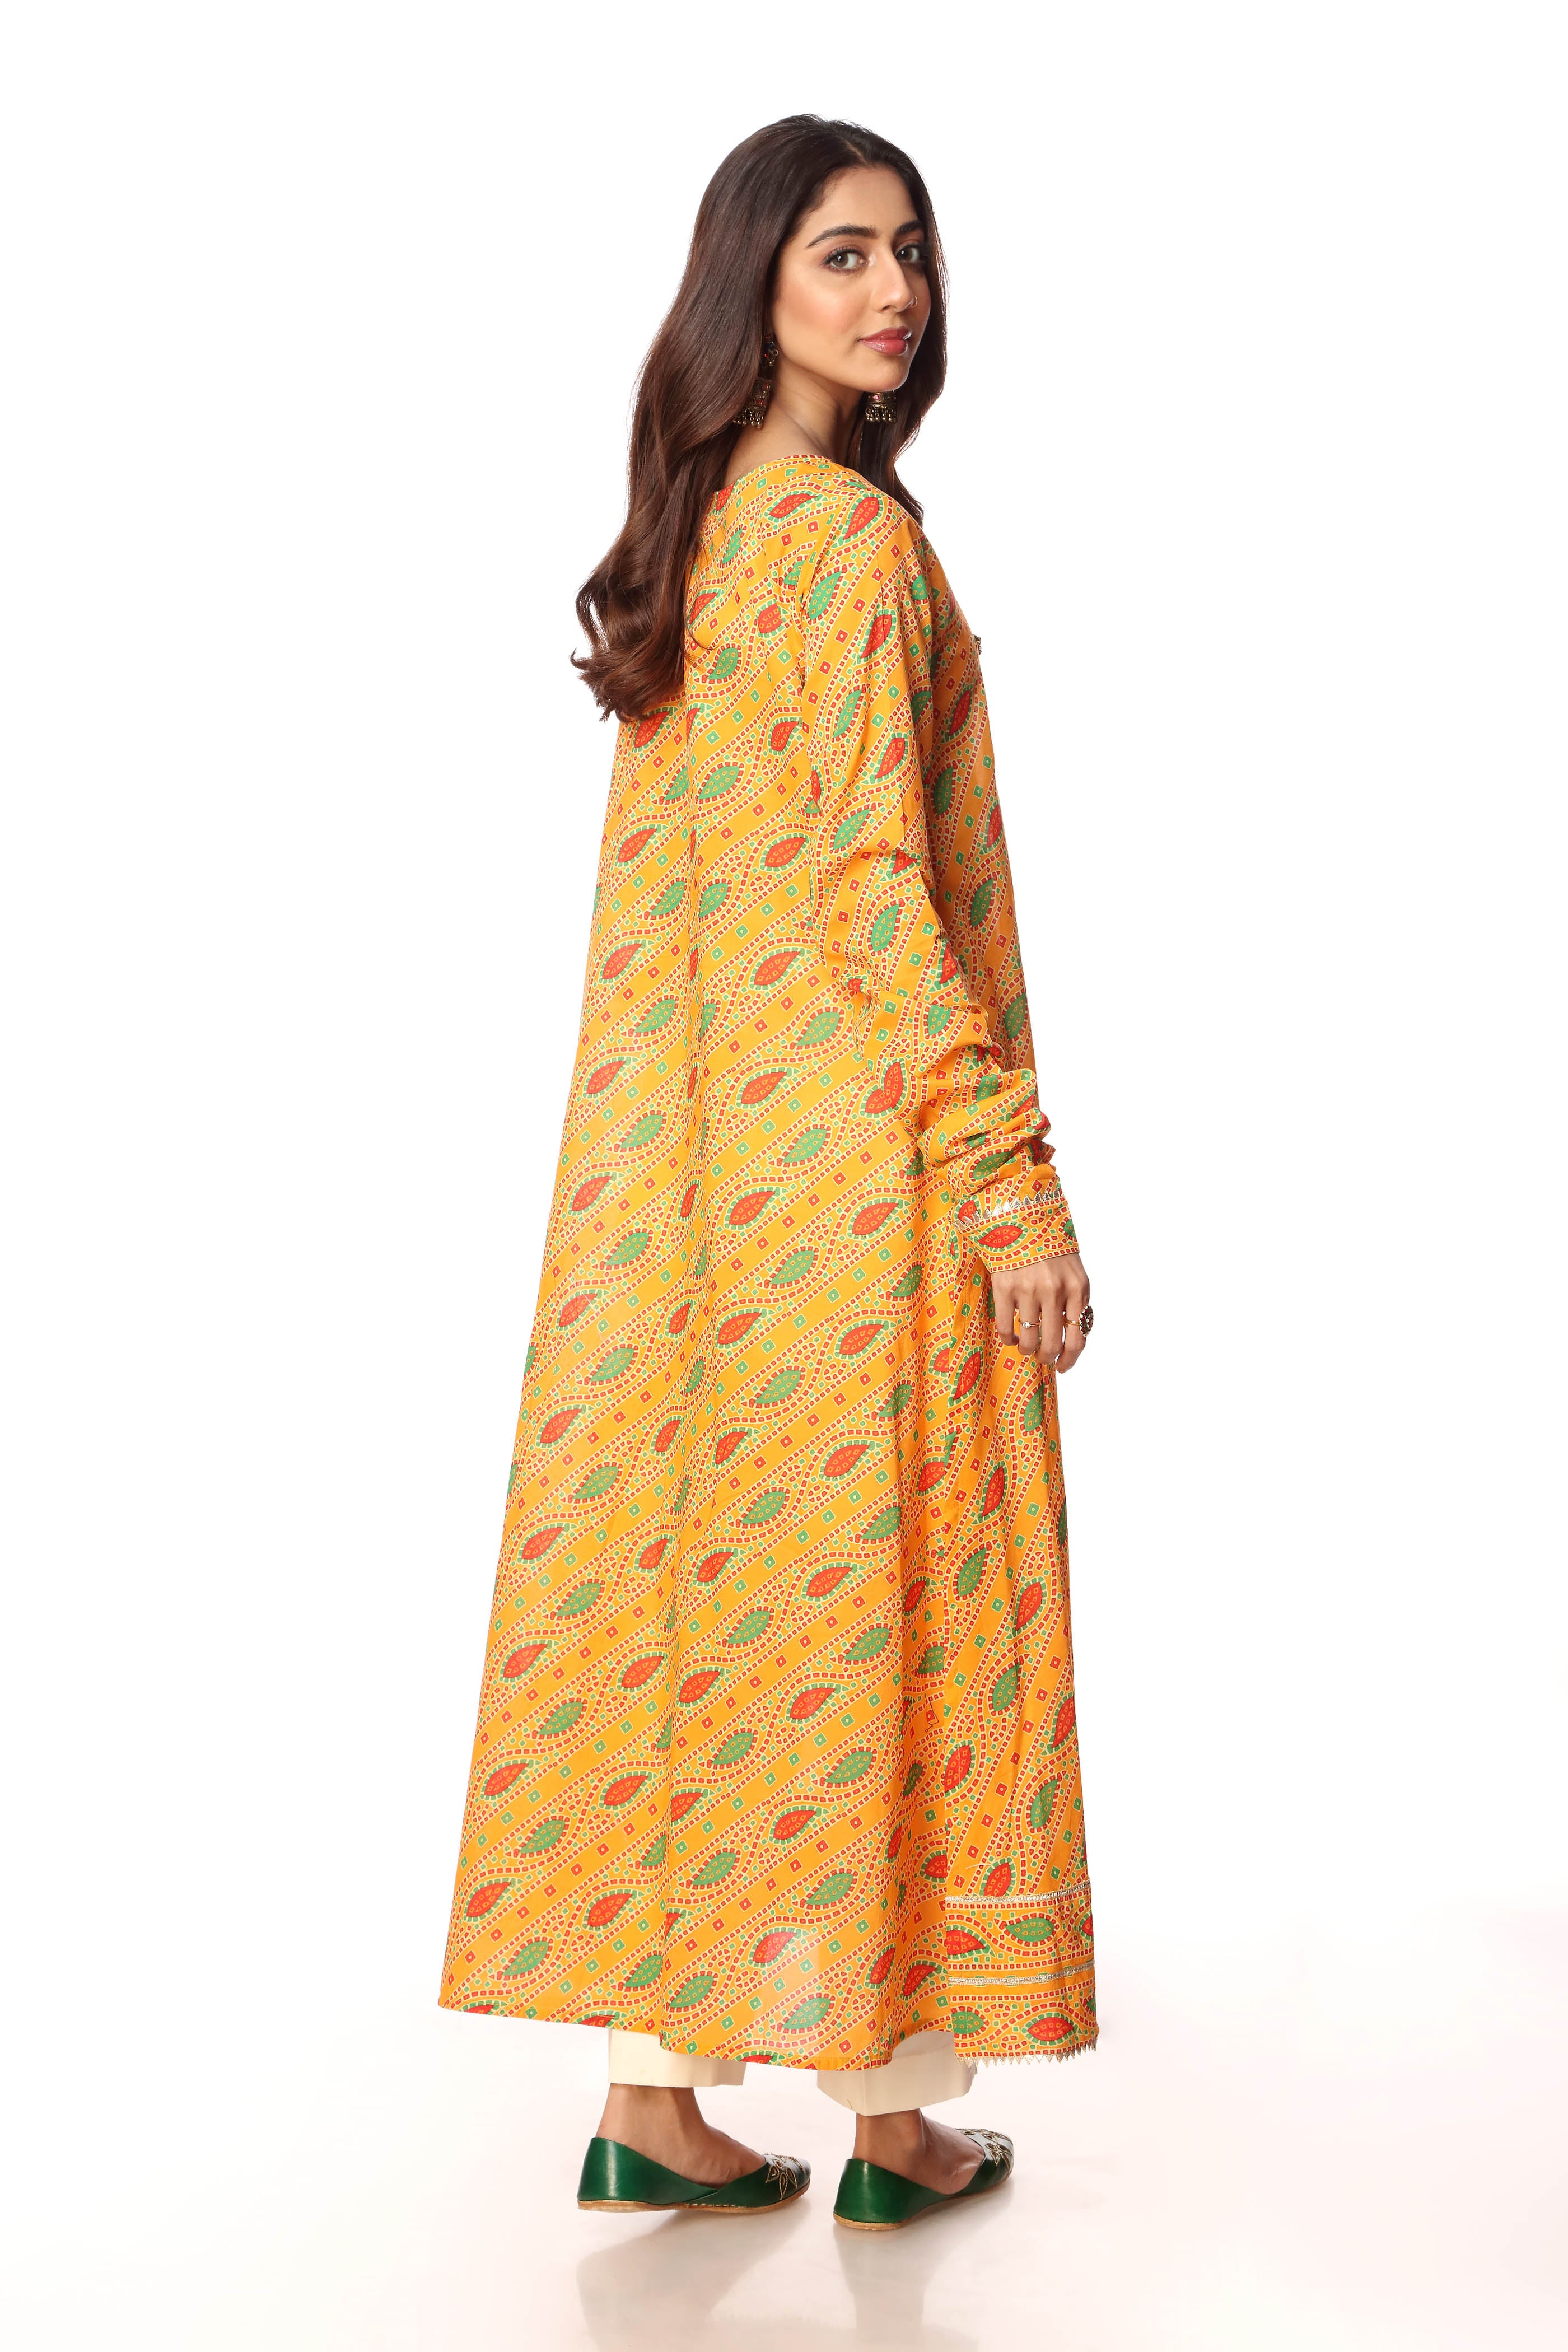 Coloured Tukri 1 in Multi coloured Printed Lawn fabric 3